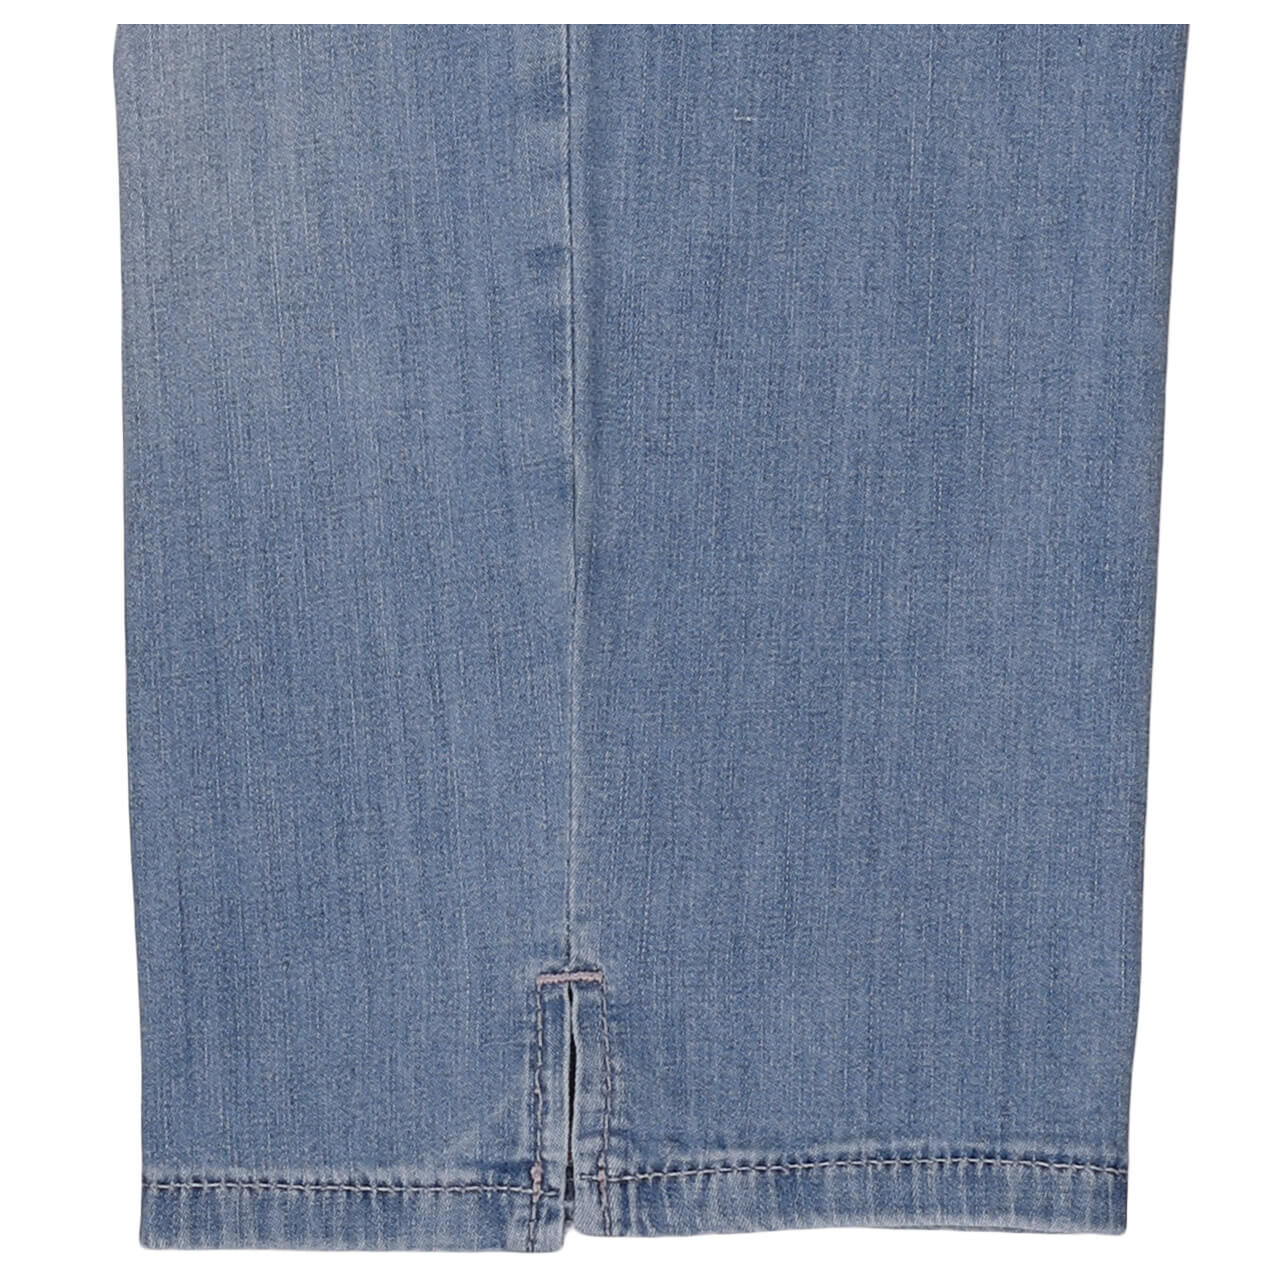 MAC Capri 3/4 Jeans blue authentic wash